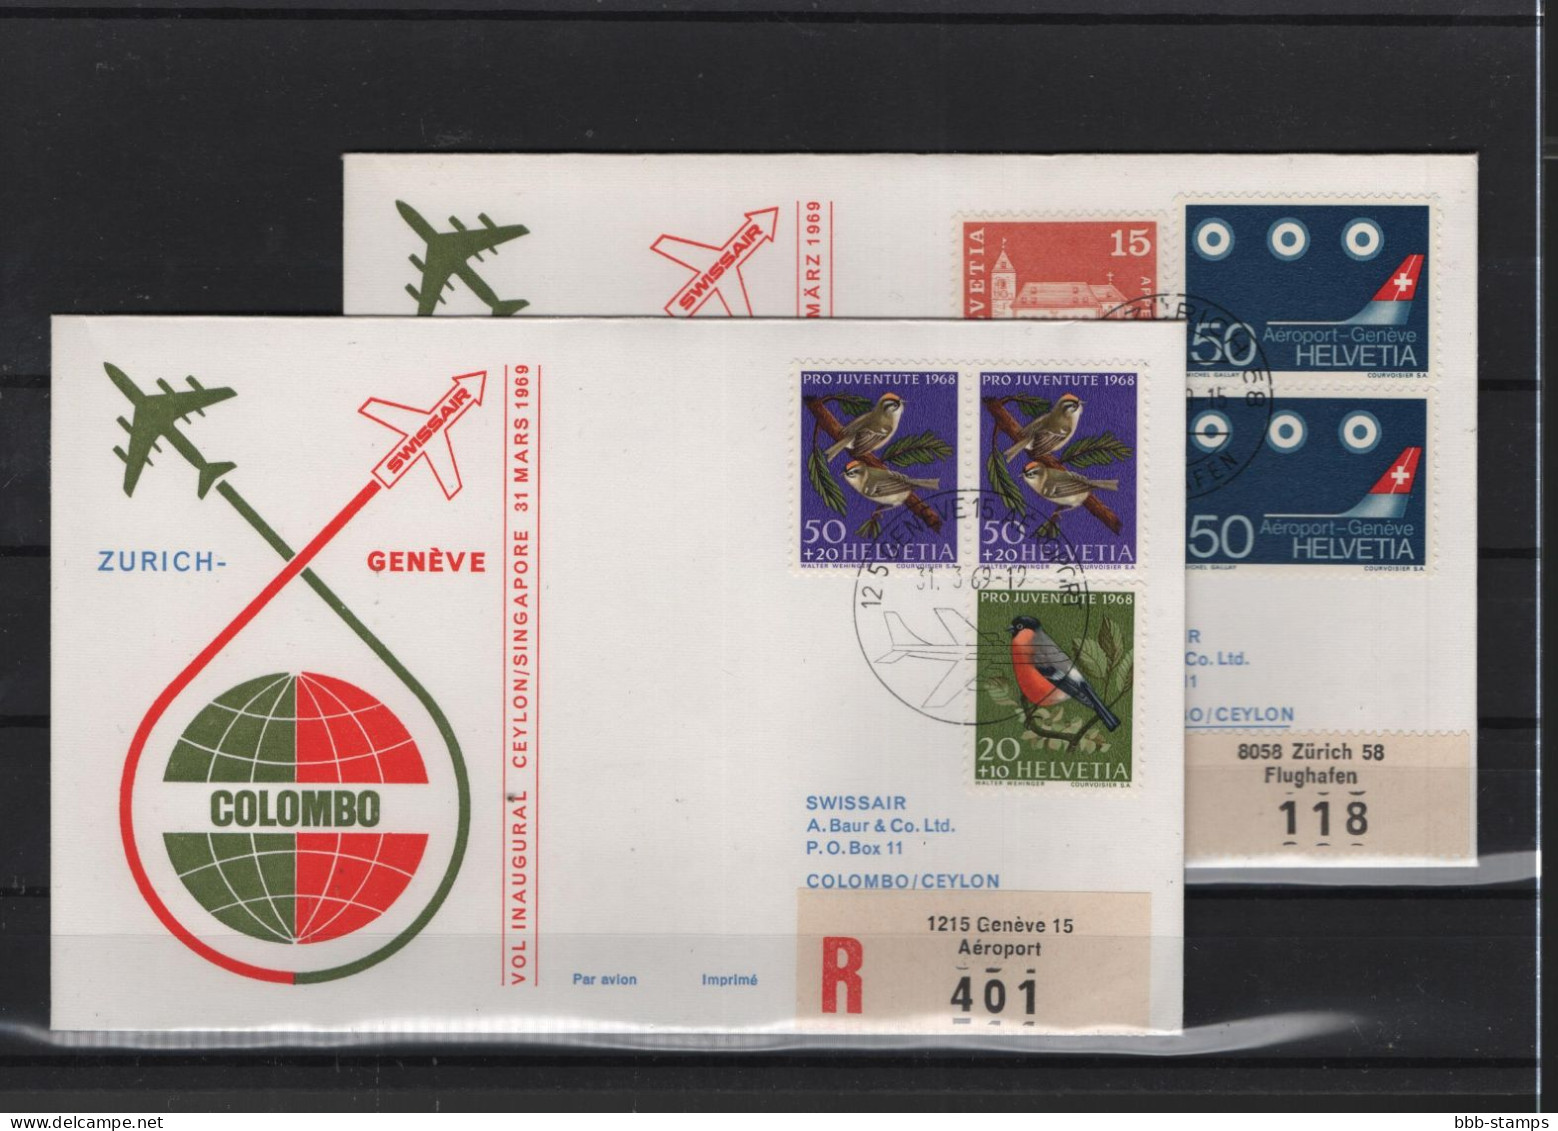 Schweiz Air Mail Swissair  FFC  31.3.1969 Zürich - Genf - Colombo VV - Primeros Vuelos